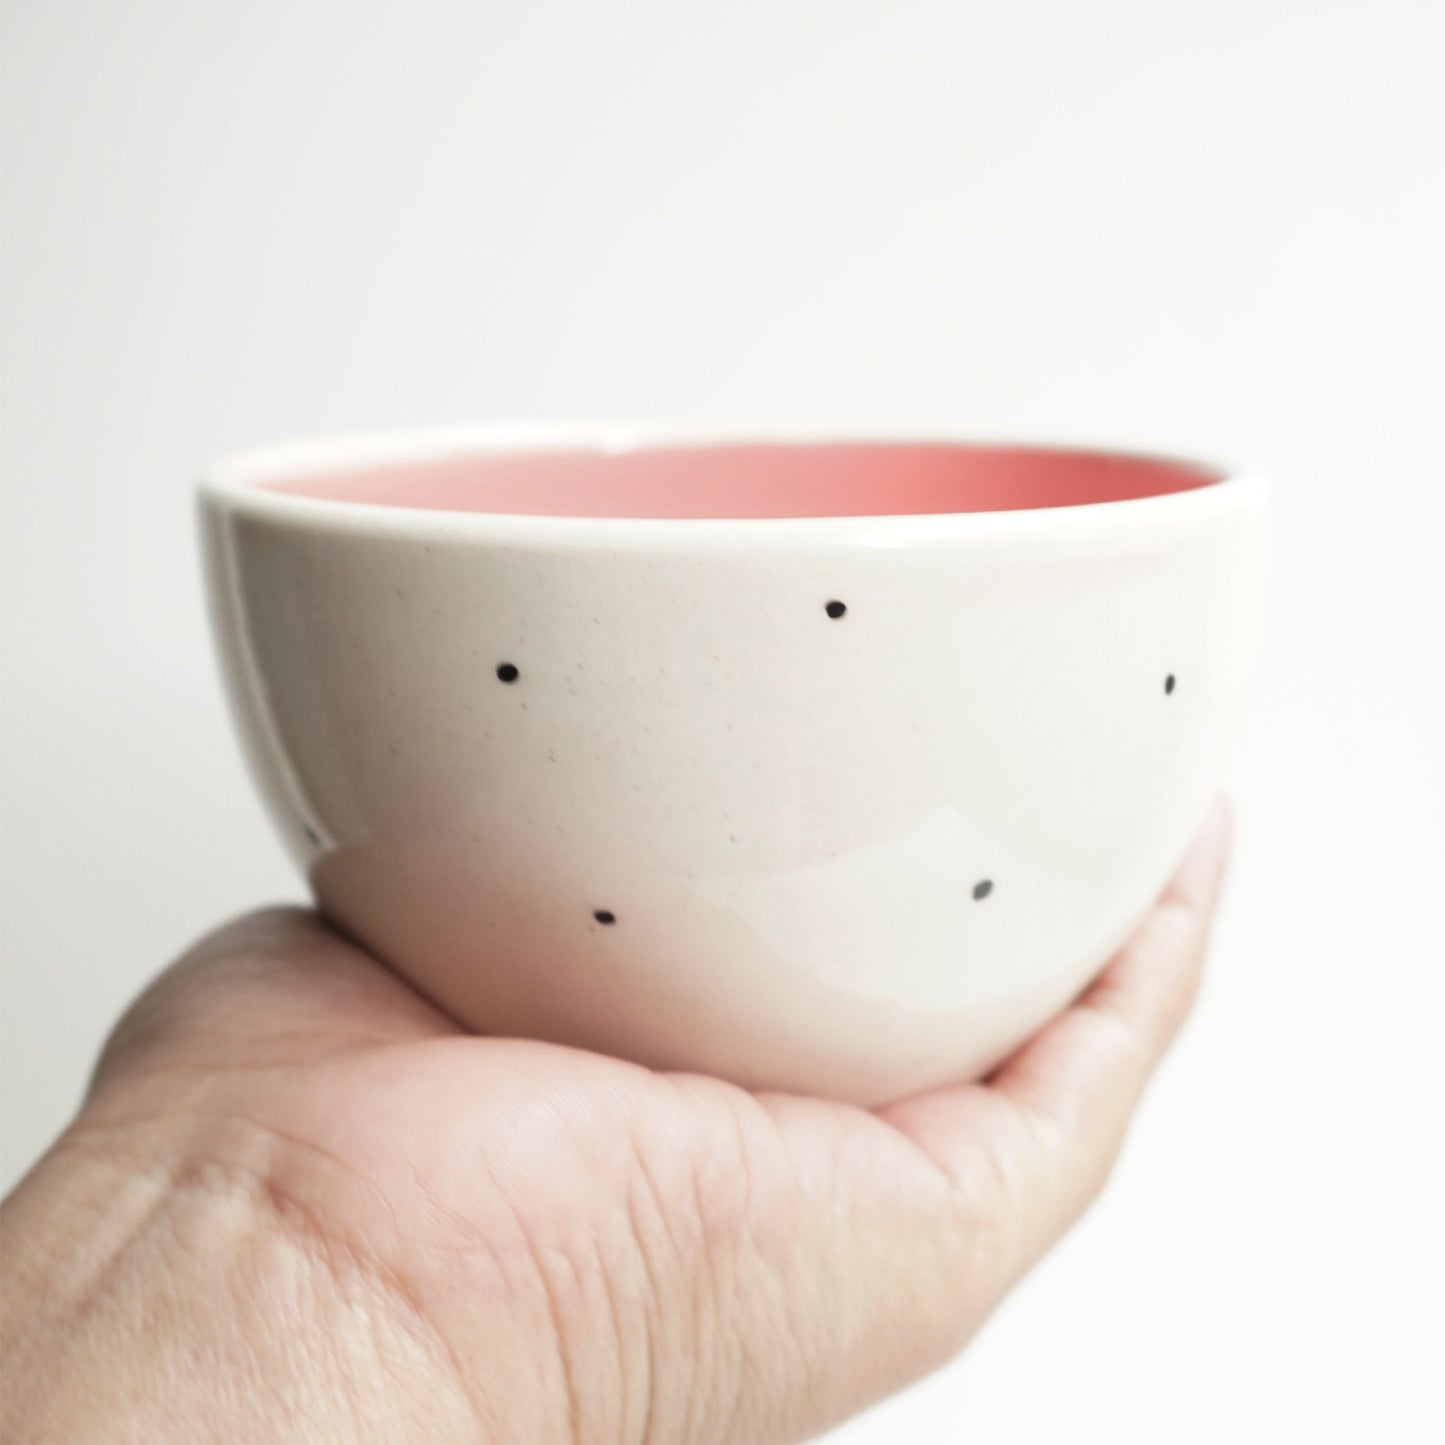 Shorshe Soup Bowls, Pink (Set of 2)